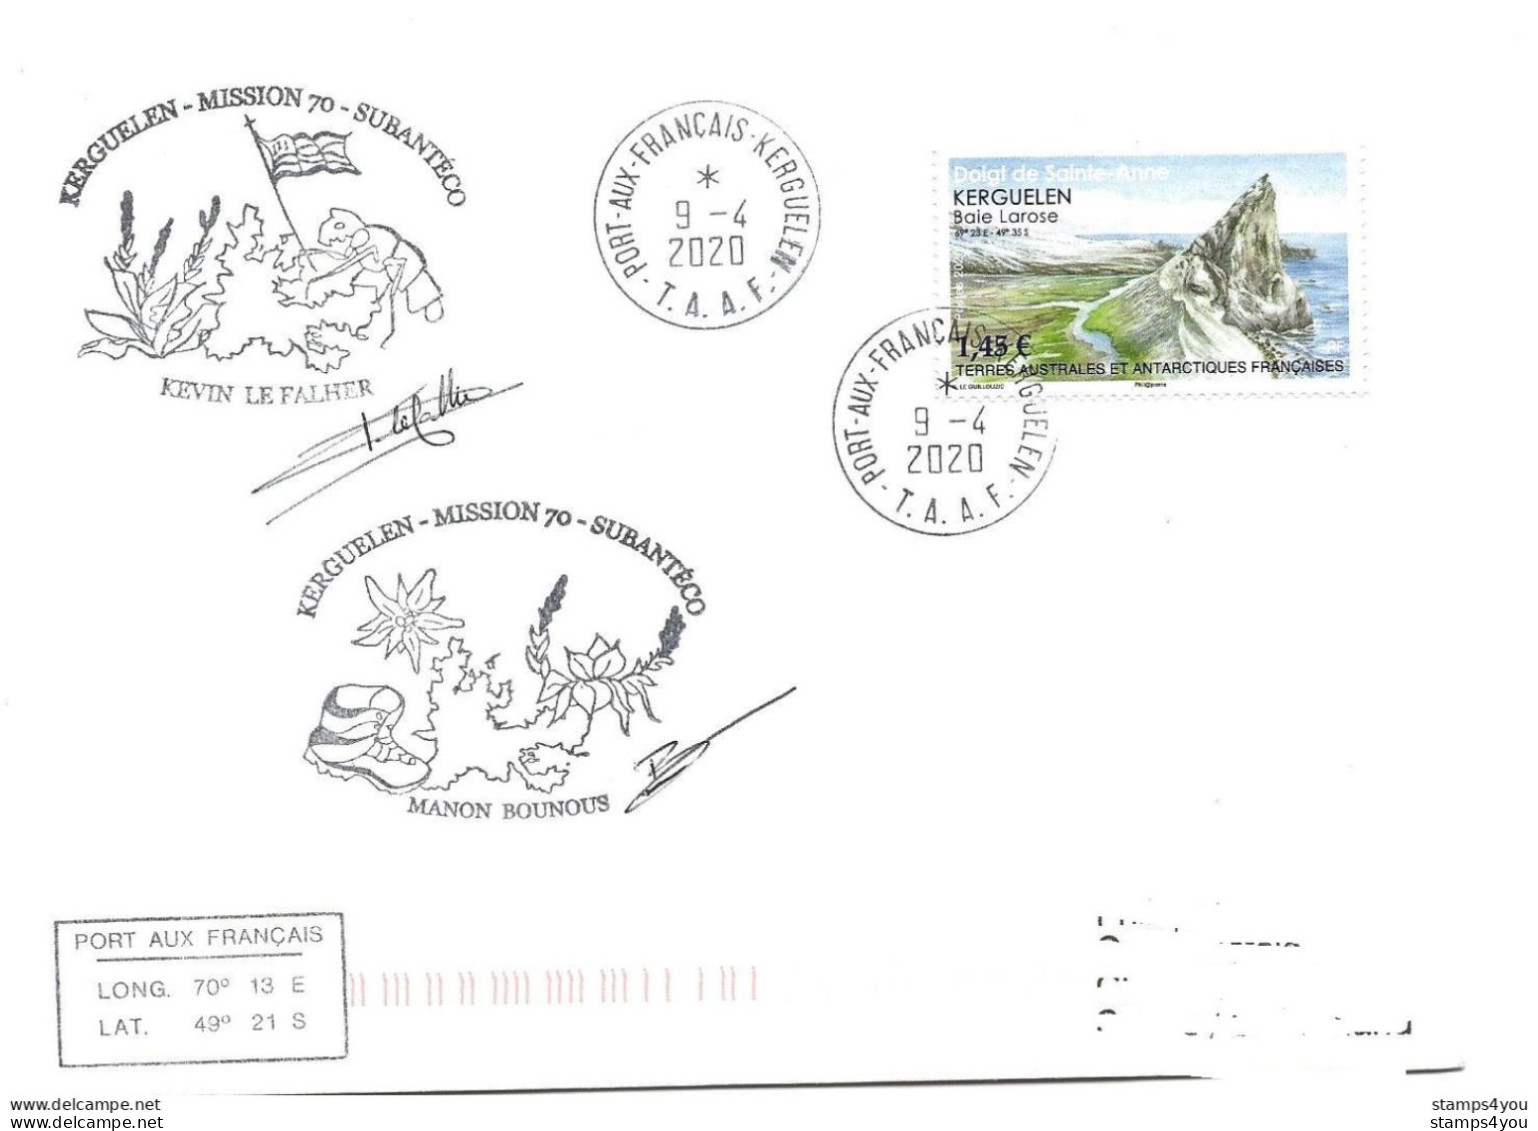 440 - 15 - Enveloppe TAAF Kerguelen - Cachets Illustrés Subantéco Mmission 70 - 2020 - Bases Antarctiques